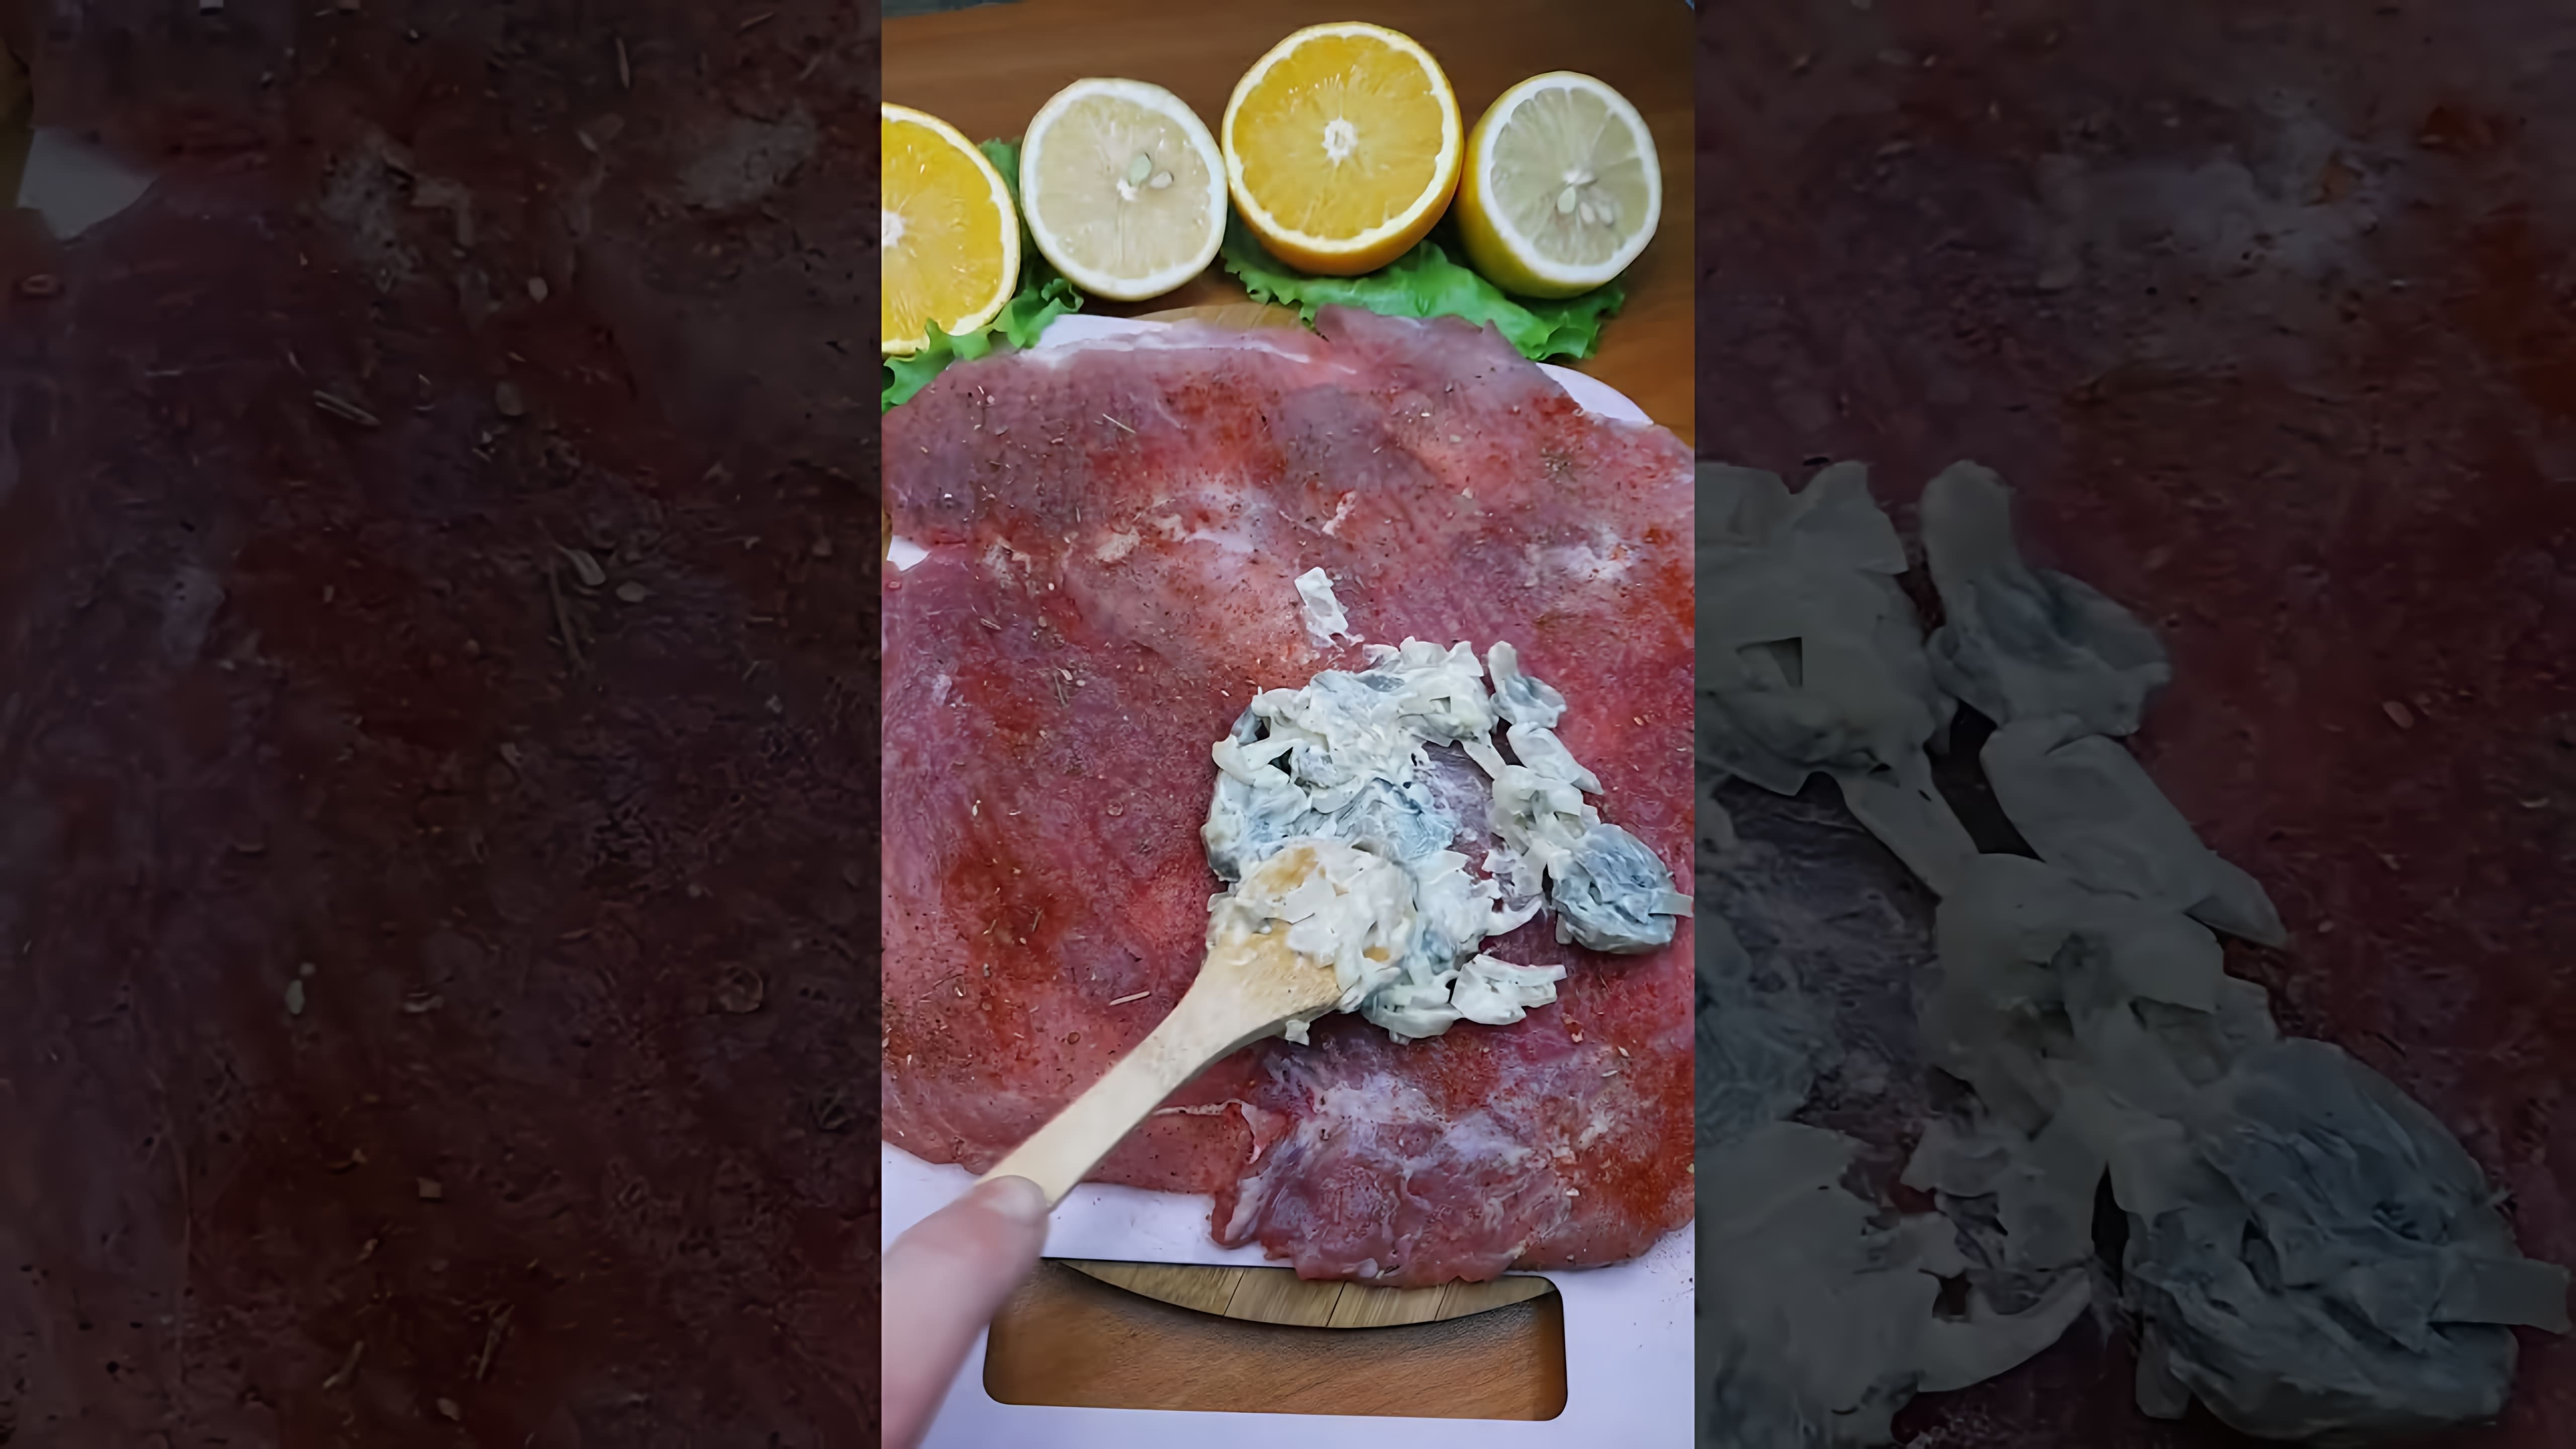 В этом видео-ролике вы увидите рецепт потрясающего мясного блюда, которое станет настоящей находкой для вашего праздничного стола